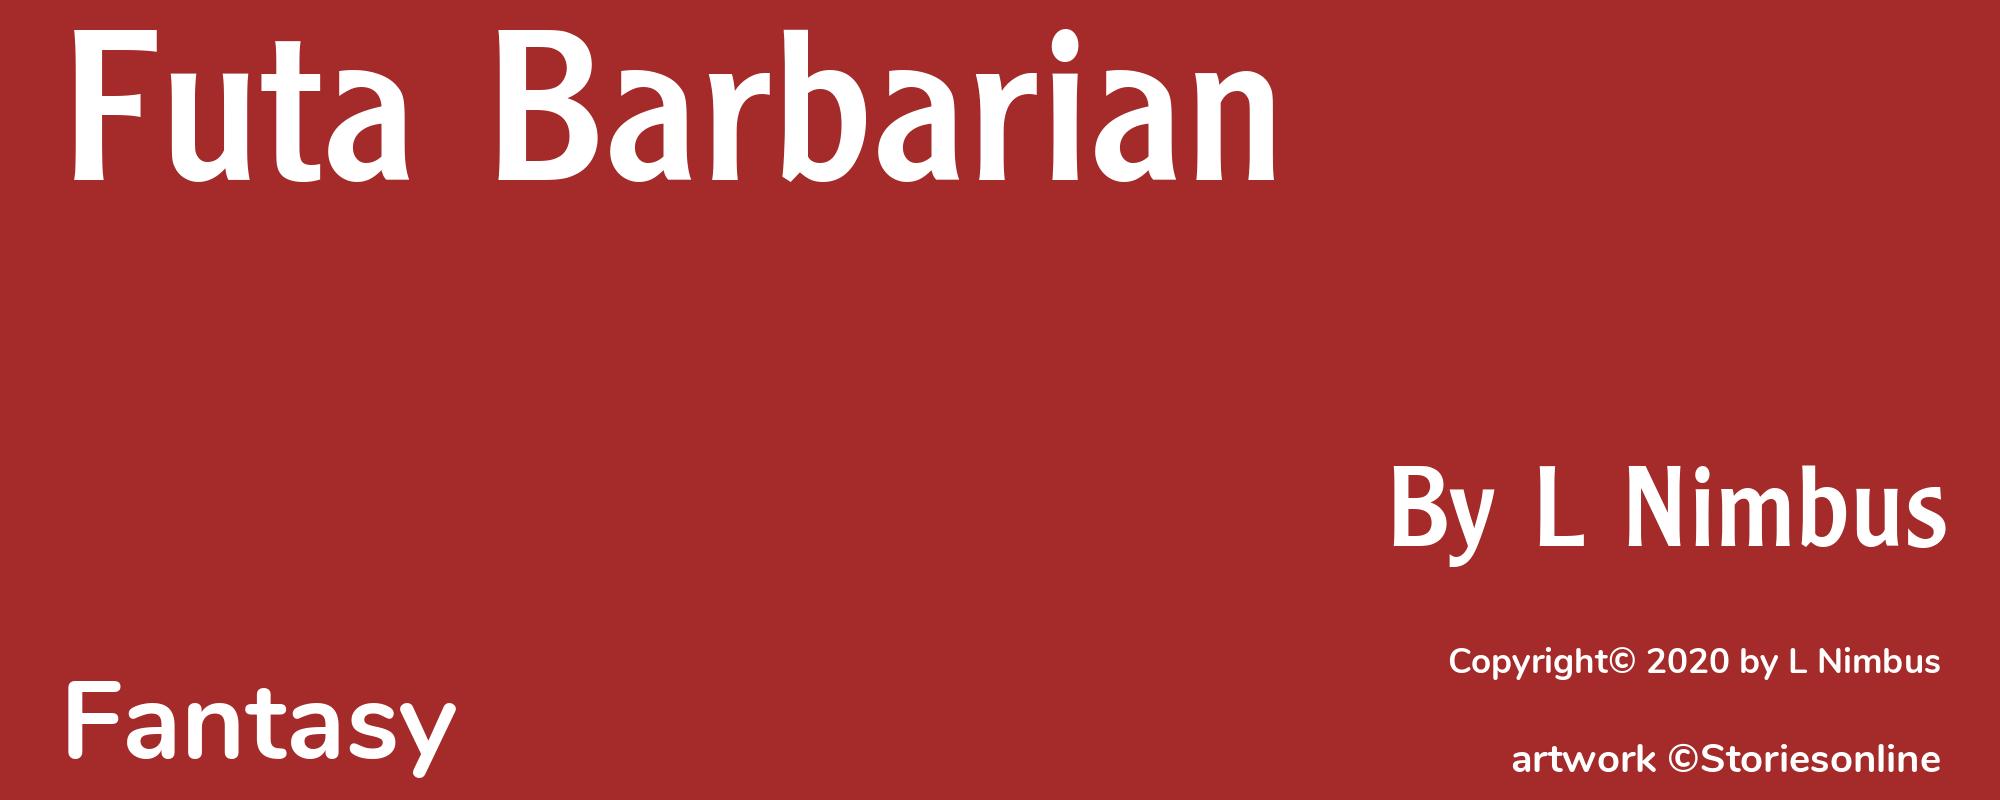 Futa Barbarian - Cover